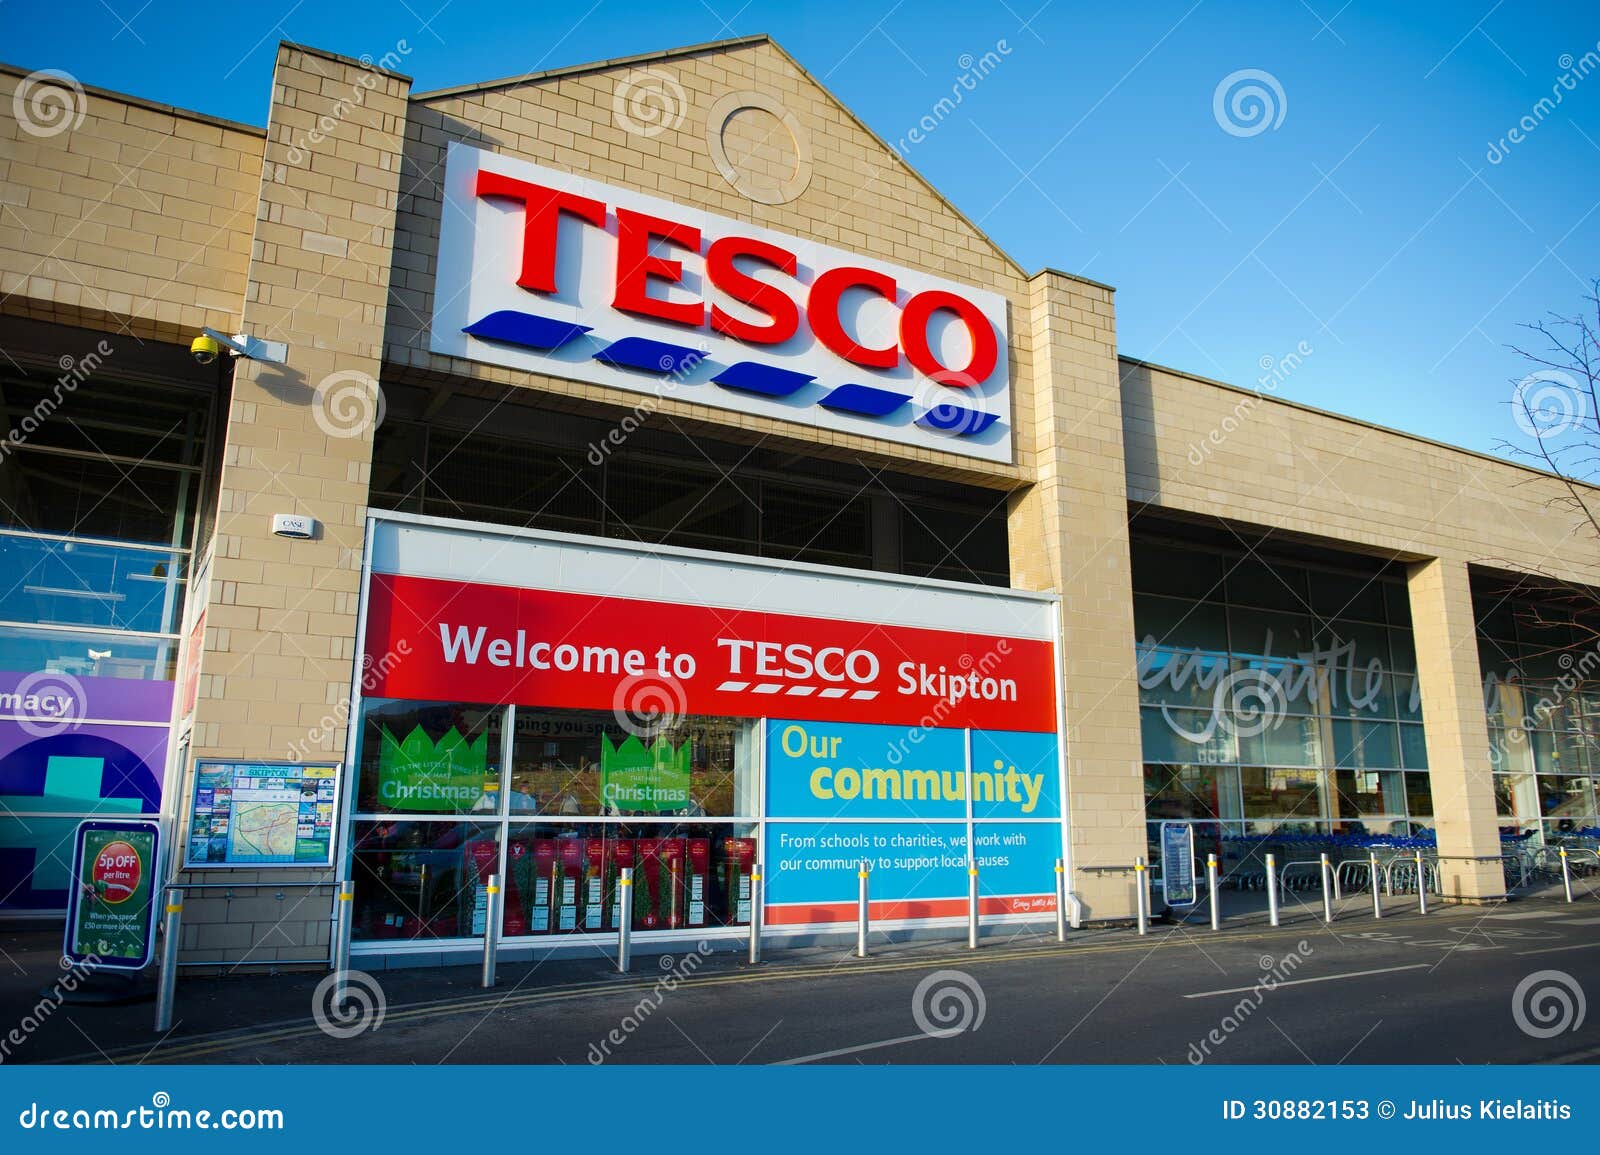 Tesco-Opslag in Skipton, het UK. 10 skipton-Dec: Tesco-Opslag op 10 Dec., 2012 in Skipton, North Yorkshire, het Verenigd Koninkrijk, Groot-Brittannië, Engeland, het UK. De grootste detailhandelaar van Groot-Brittannië de grootste supermarkt en in het UK.